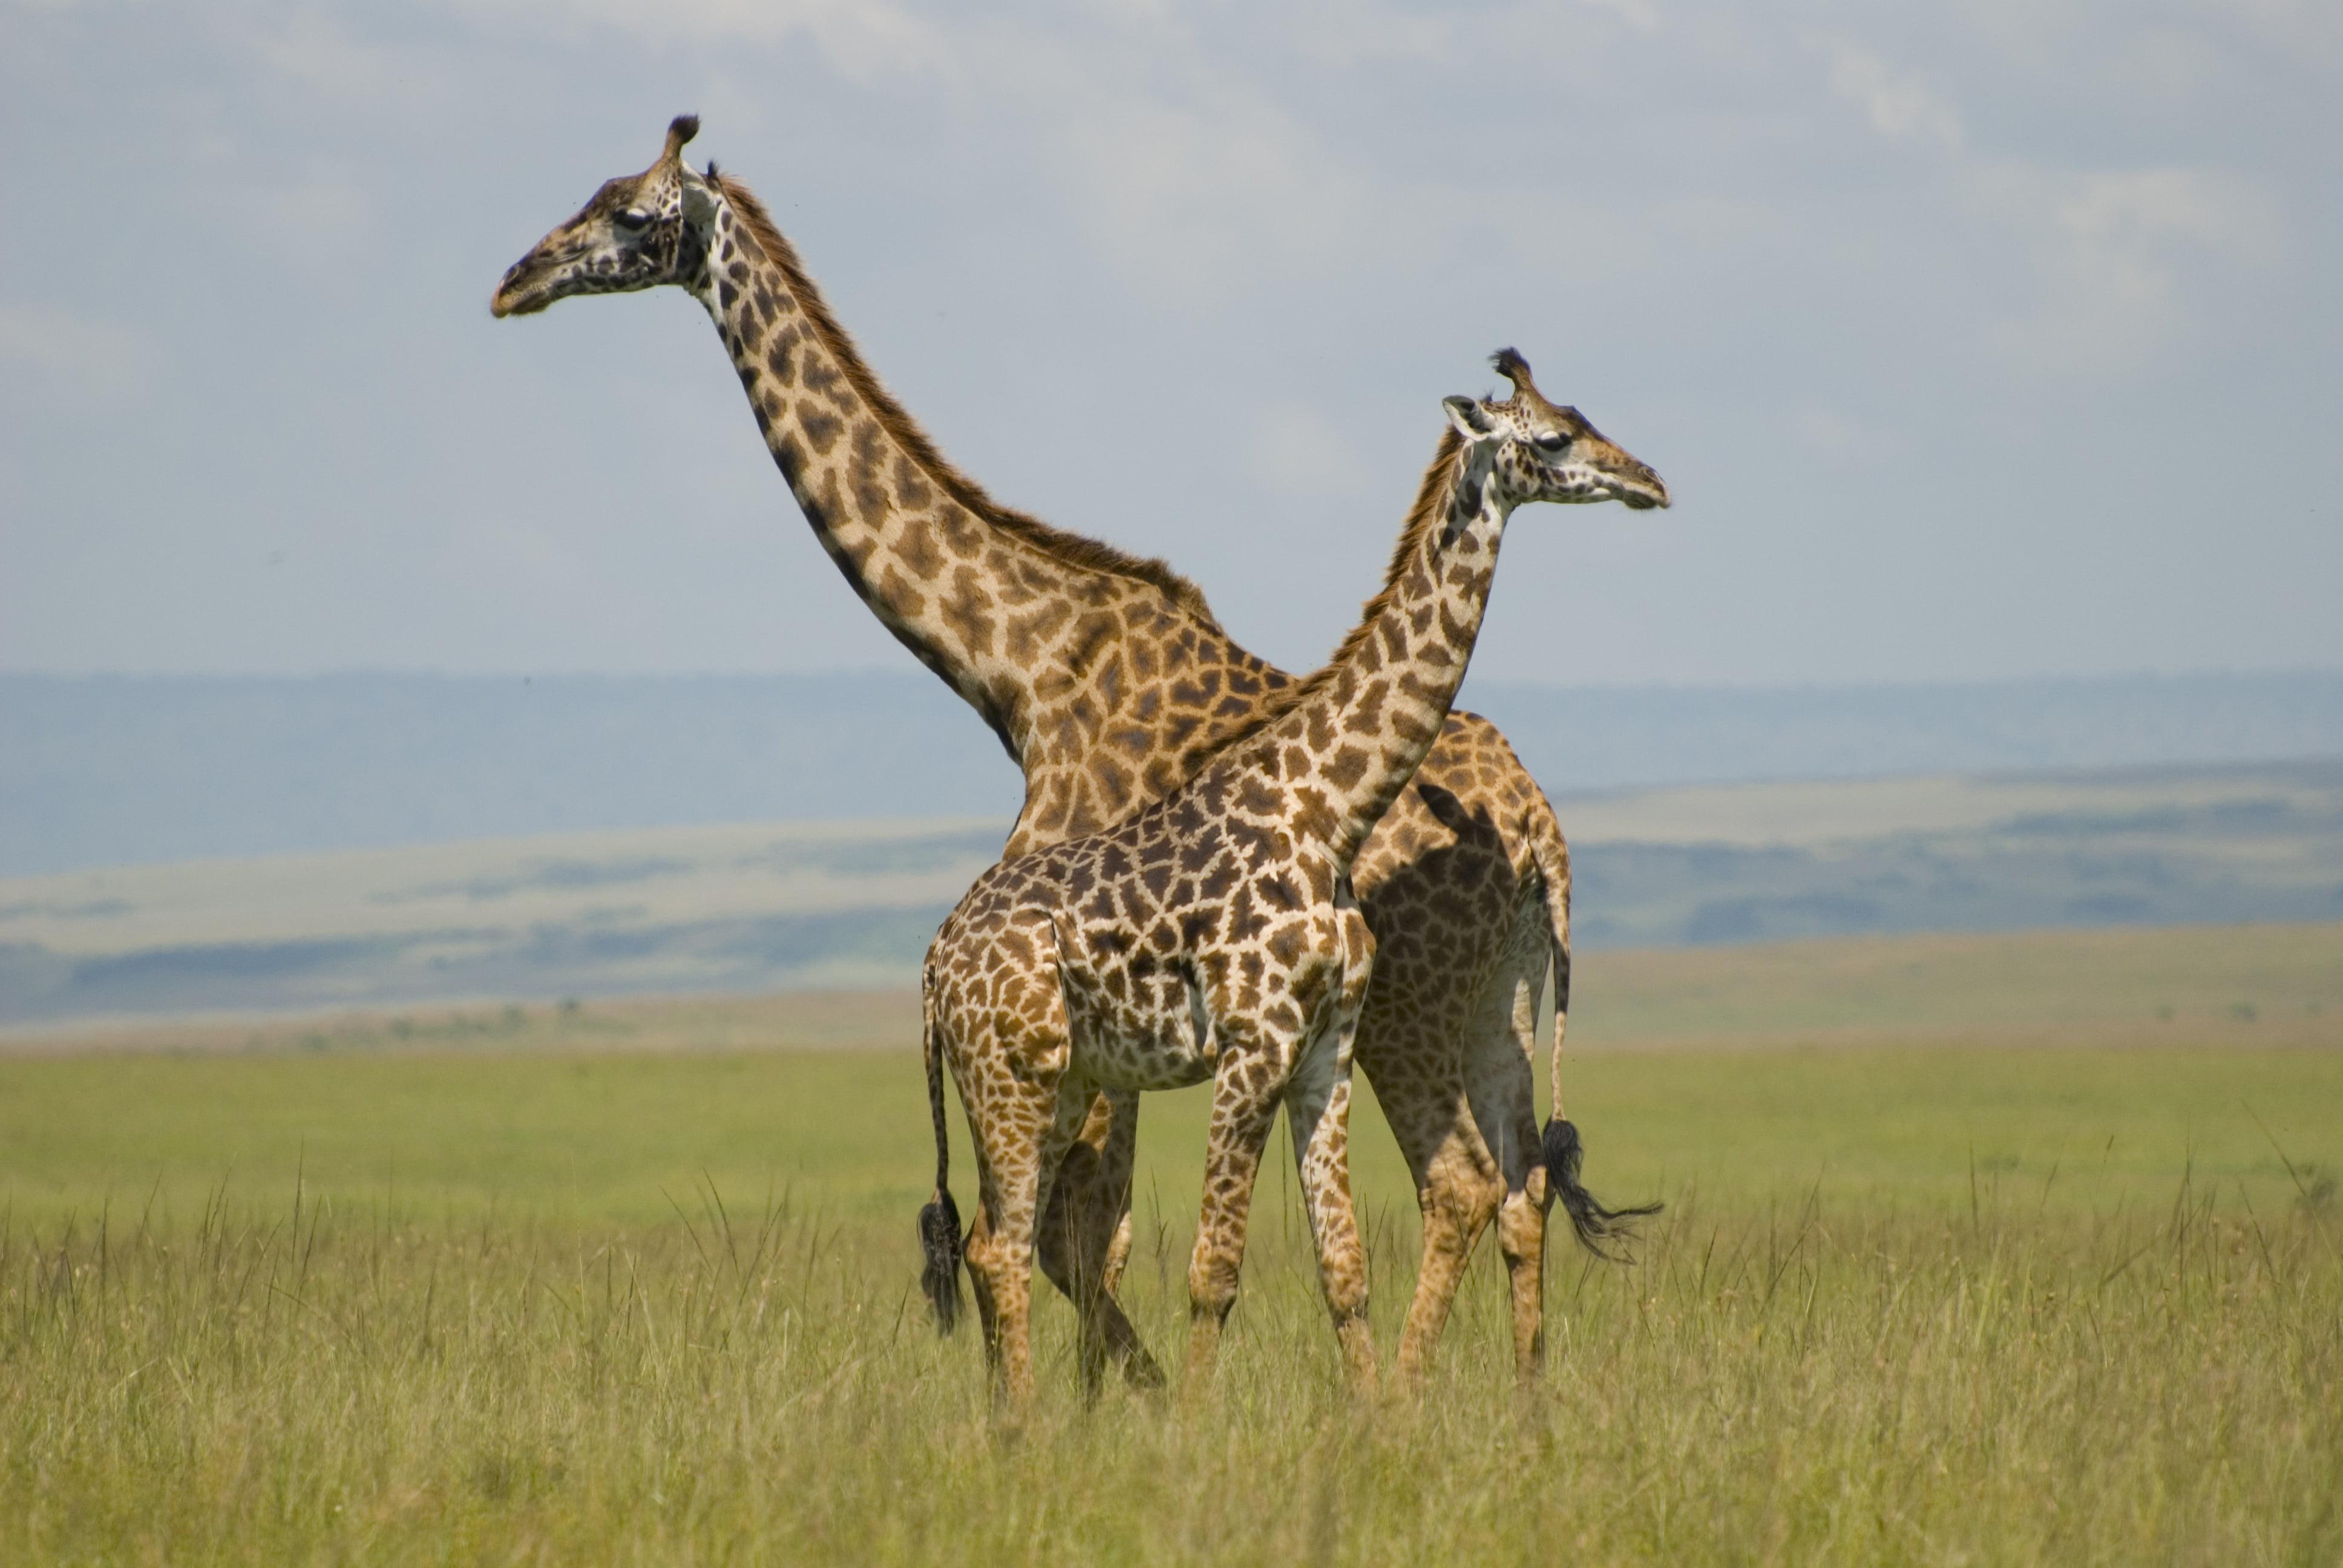 Two Giraffe in grass field, giraffes, masai mara, kenya HD